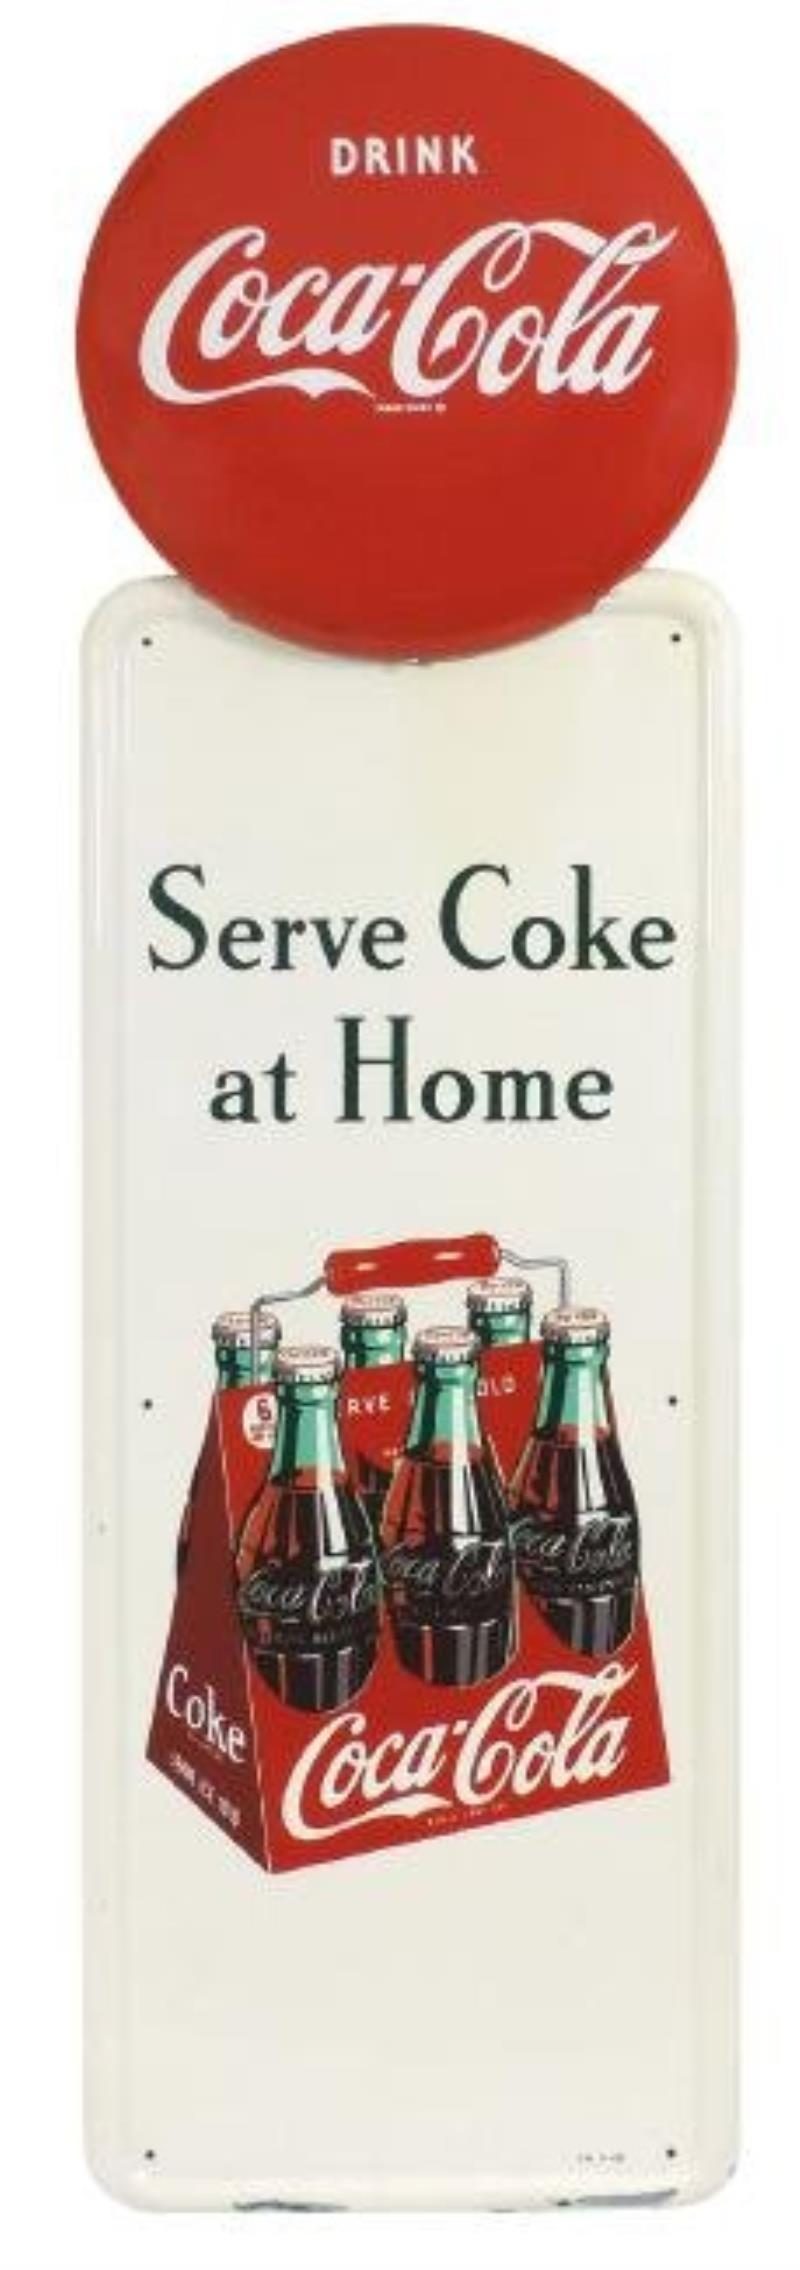 Coca-Cola sign, Serve Coke at Home, self-framed metal